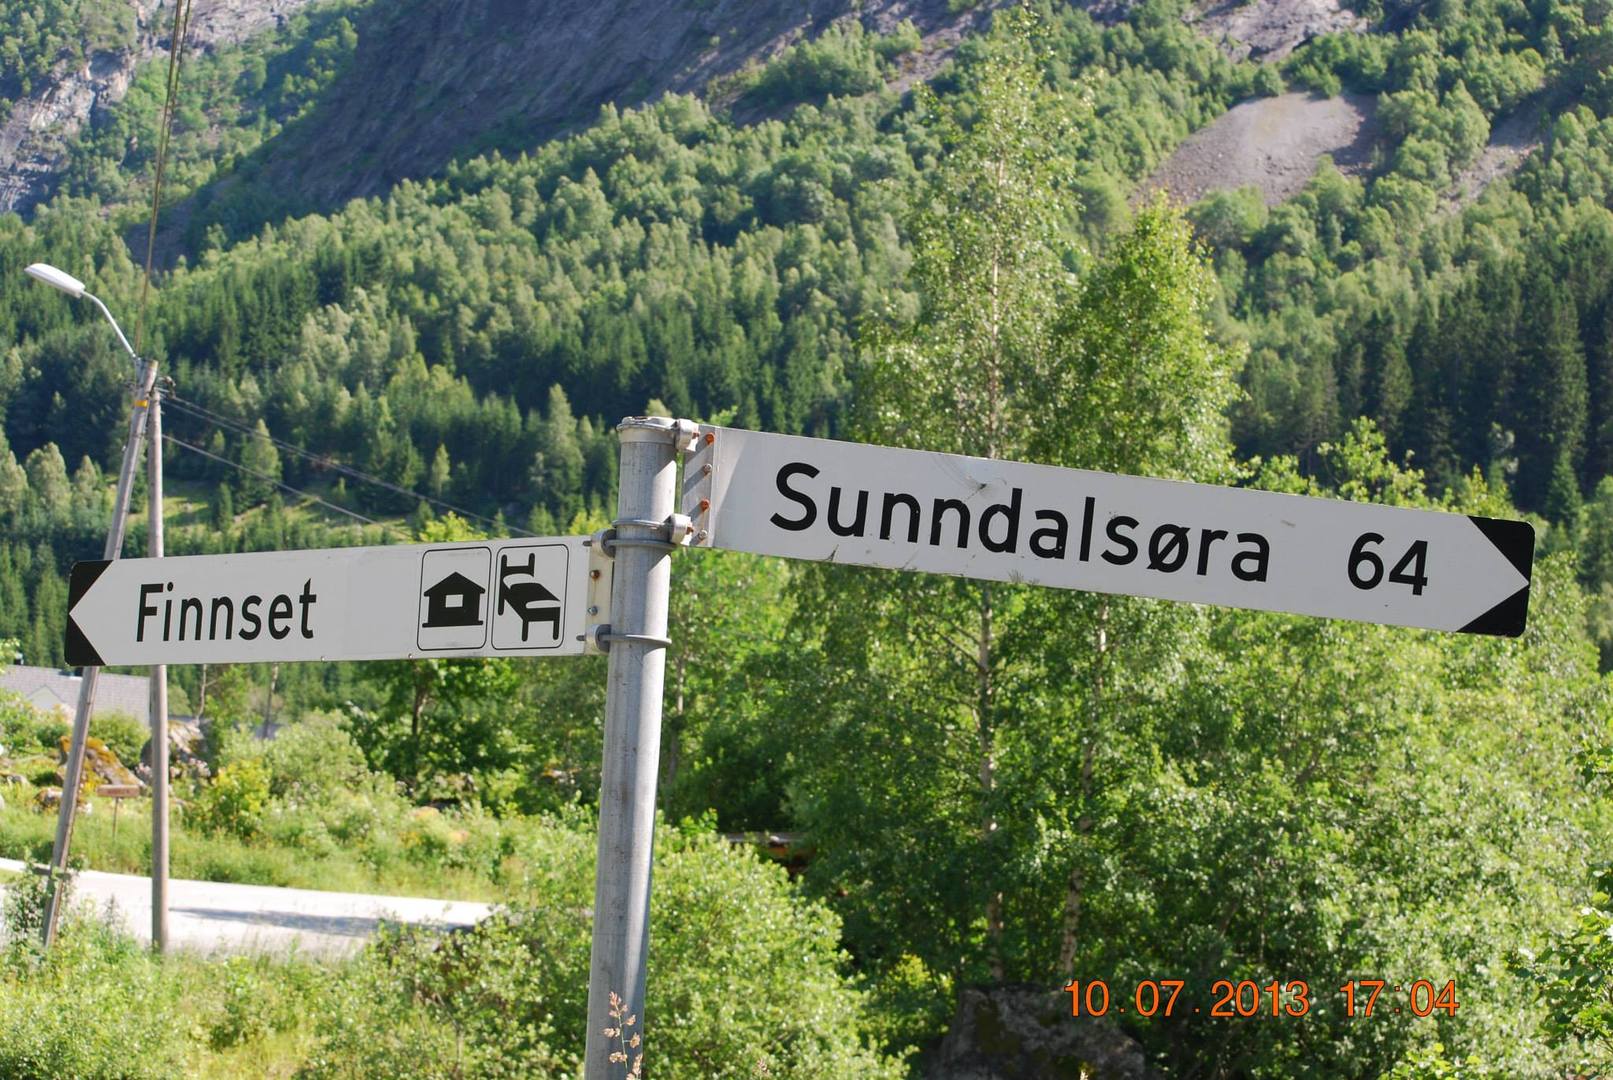 השלט מראה לנו שעד לעירSunndalsøra יש לנו עוד 64 ק"